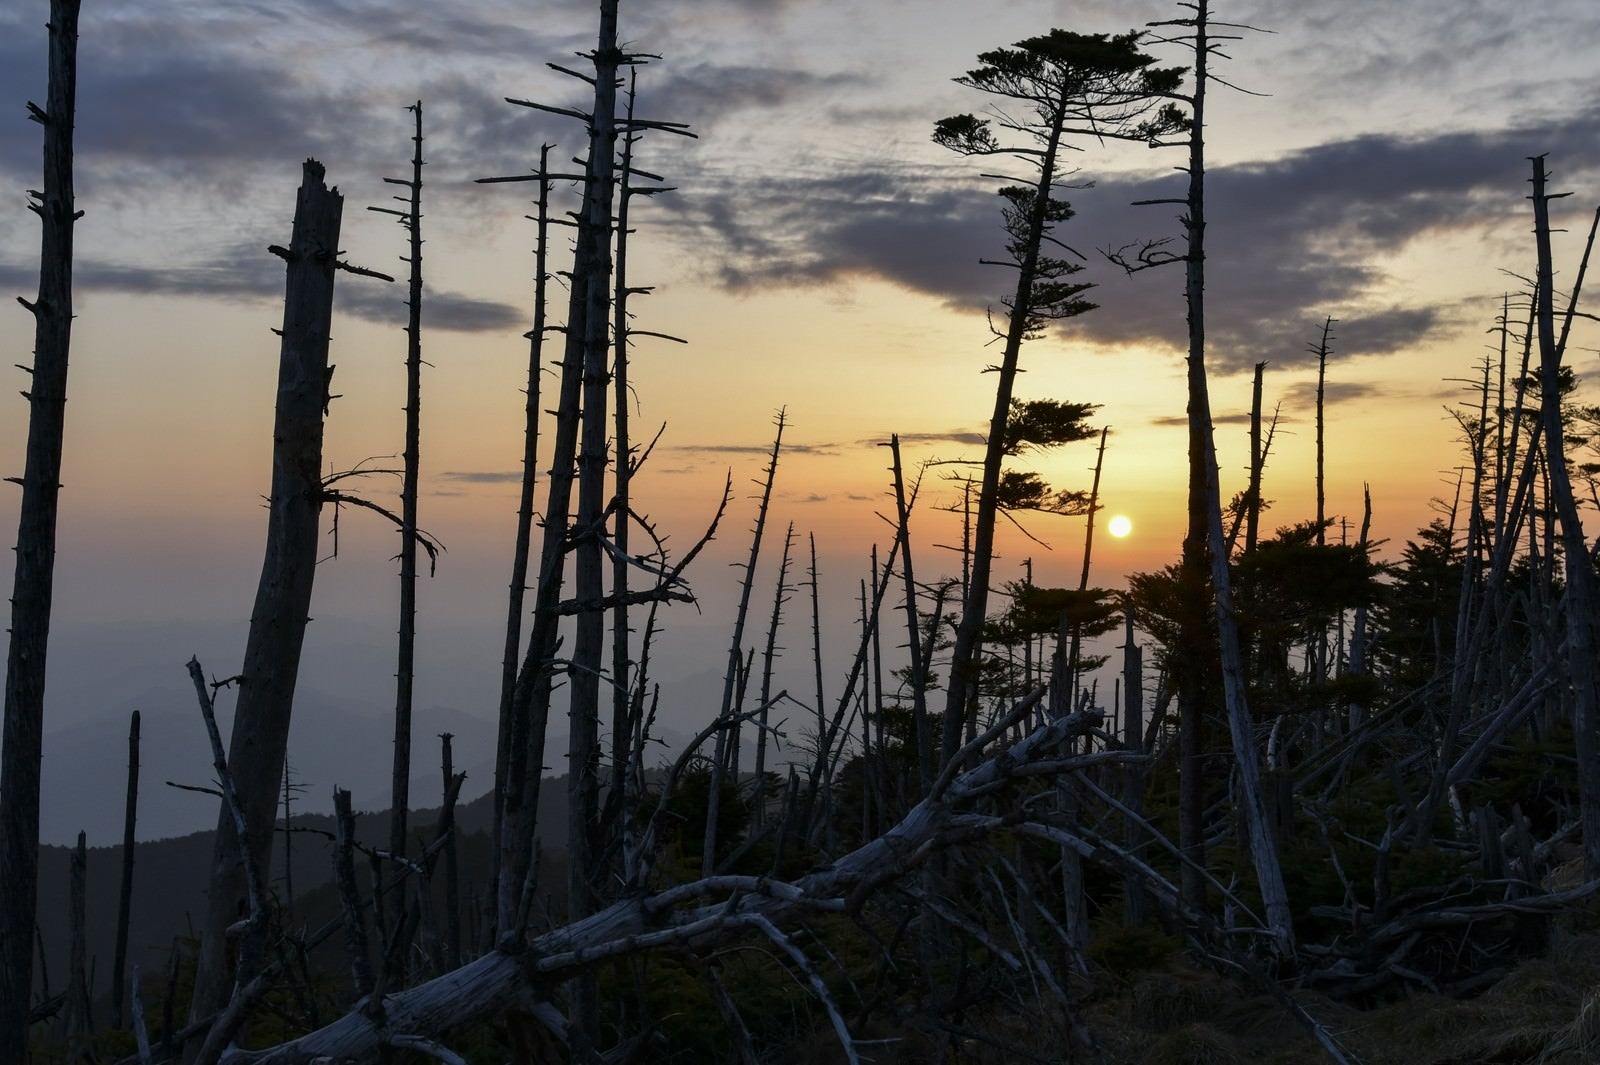 「▲大峰山山頂の立ち枯れの木々に沈む夕日」の写真